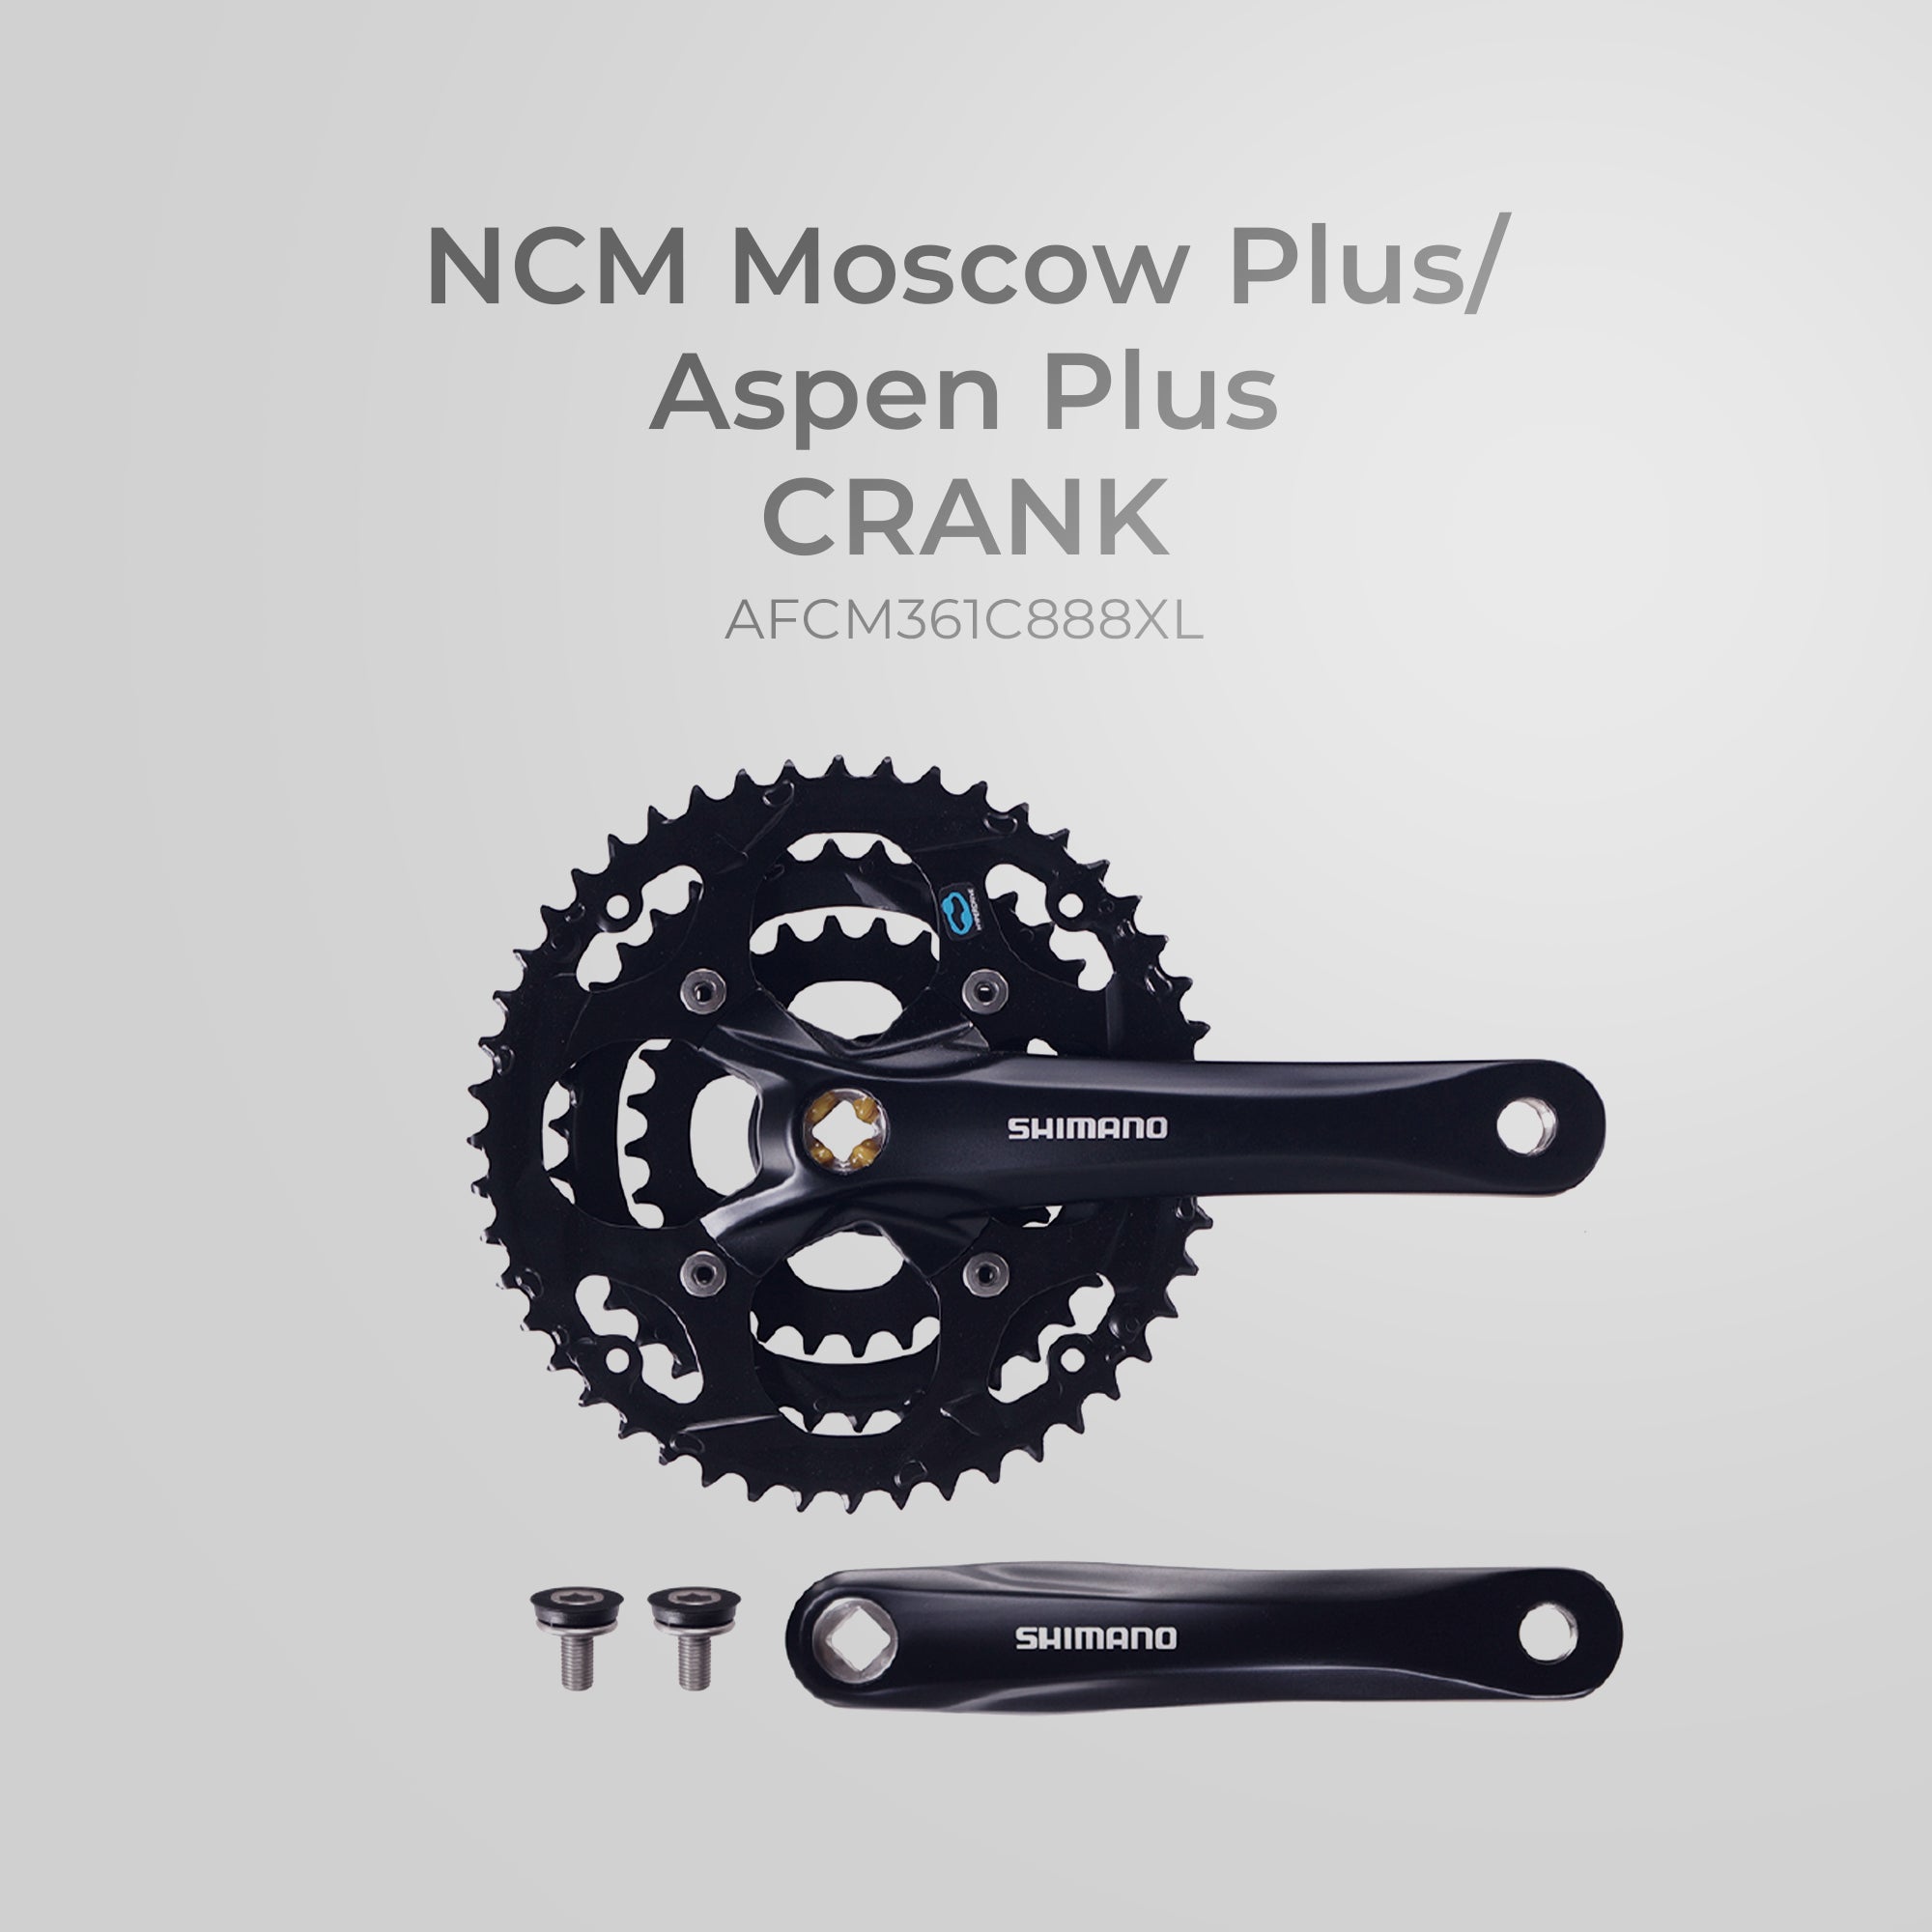 NCM Moscow Plus/Aspen Plus Crank - AFCM361C888XL